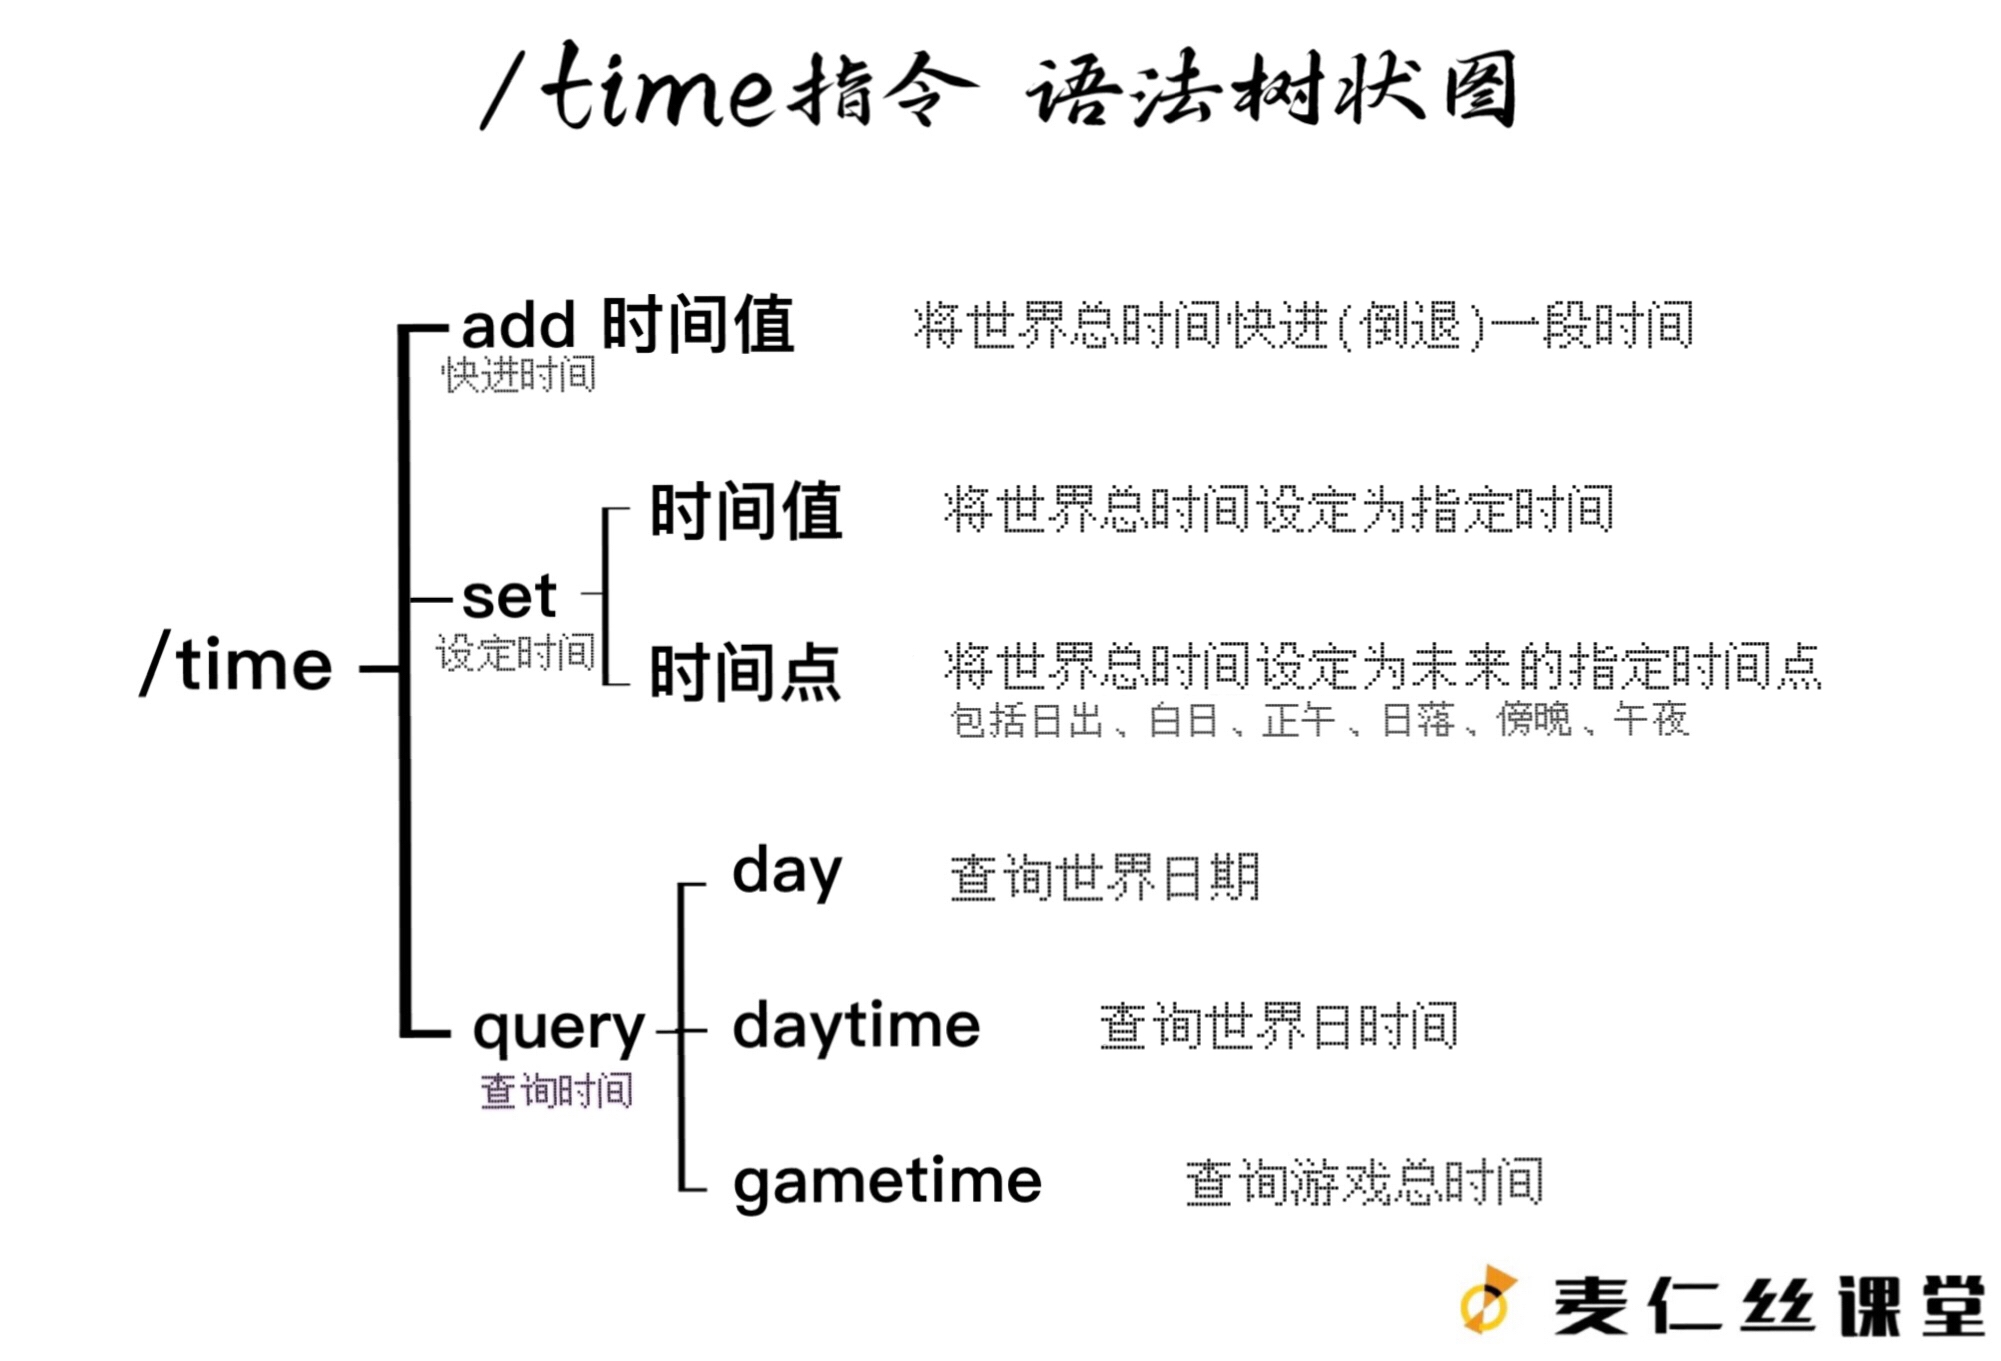 【麦仁丝课堂】/time指令语法树状图